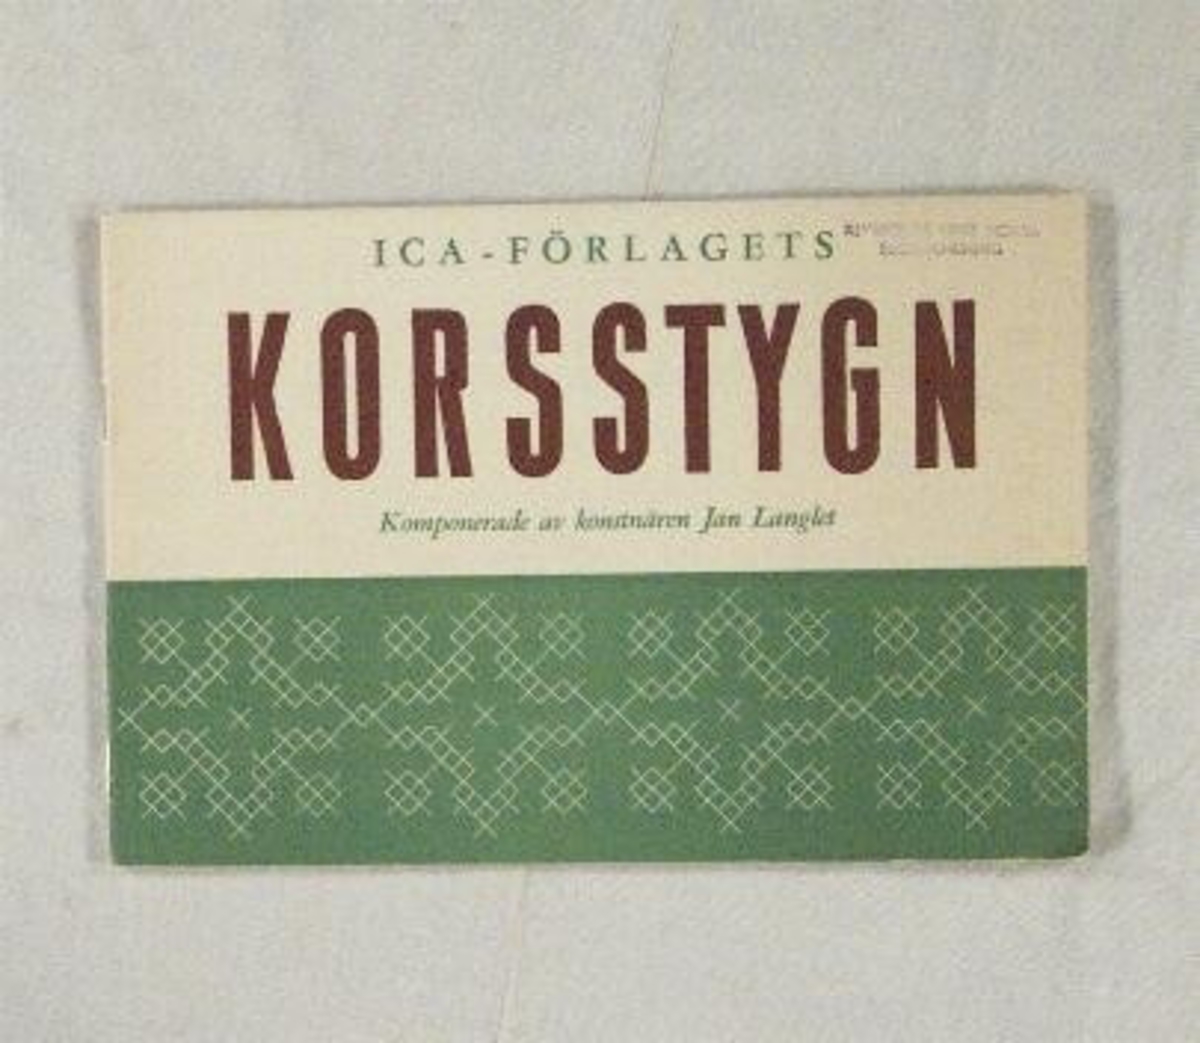 Häfte: ''Korsstygn'' koponerade av konstnären Jan Langlet. Utgiven av ICA-Förlaget.